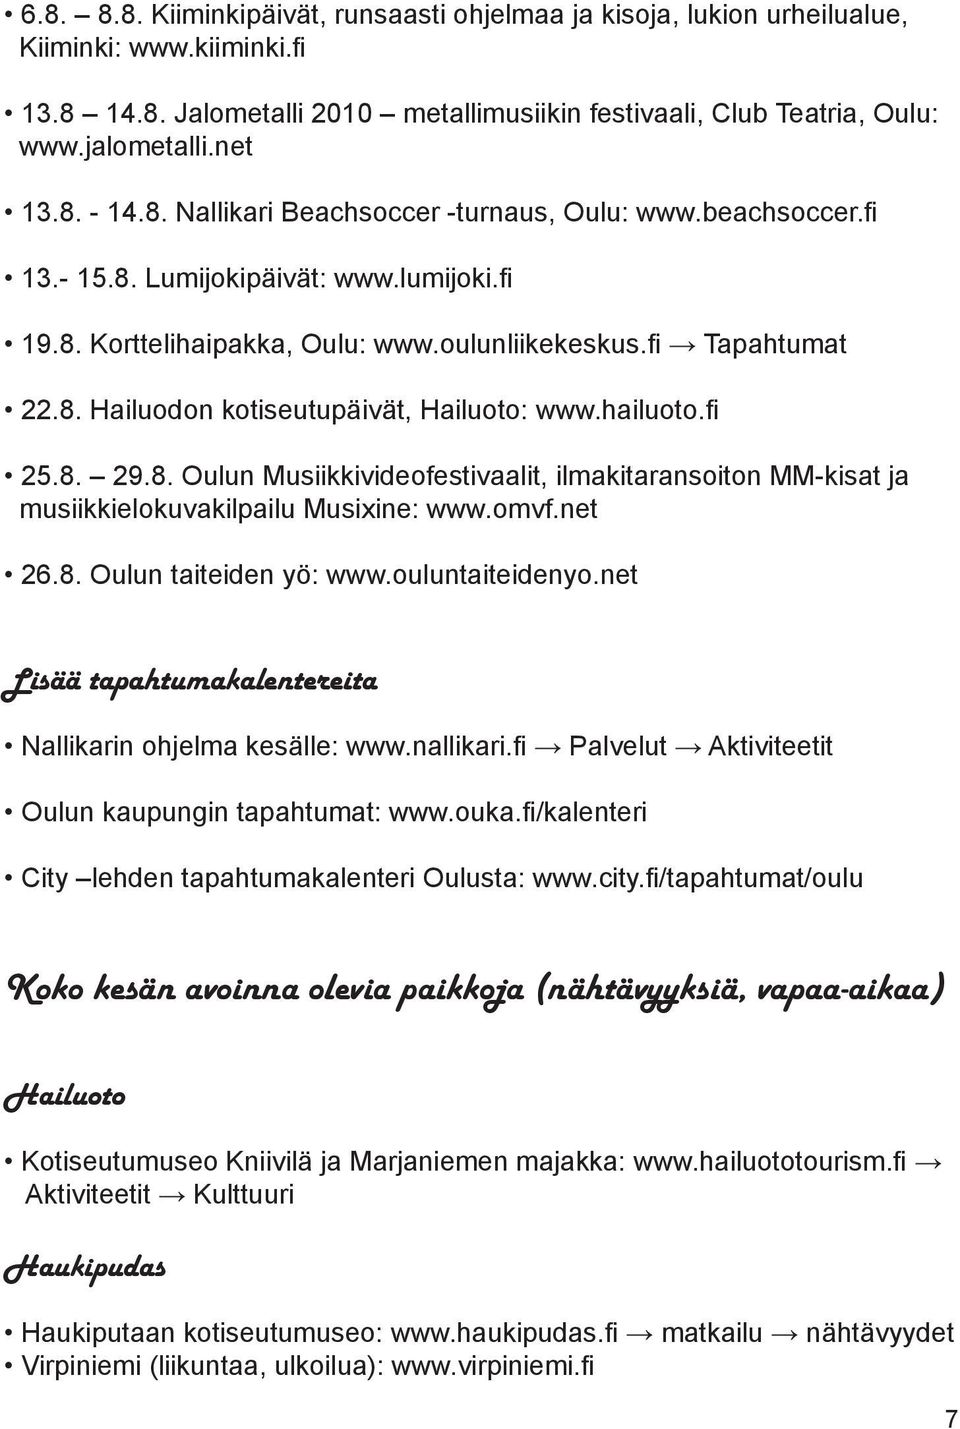 hailuoto.fi 25.8. 29.8. Oulun Musiikkivideofestivaalit, ilmakitaransoiton MM-kisat ja musiikkielokuvakilpailu Musixine: www.omvf.net 26.8. Oulun taiteiden yö: www.ouluntaiteidenyo.